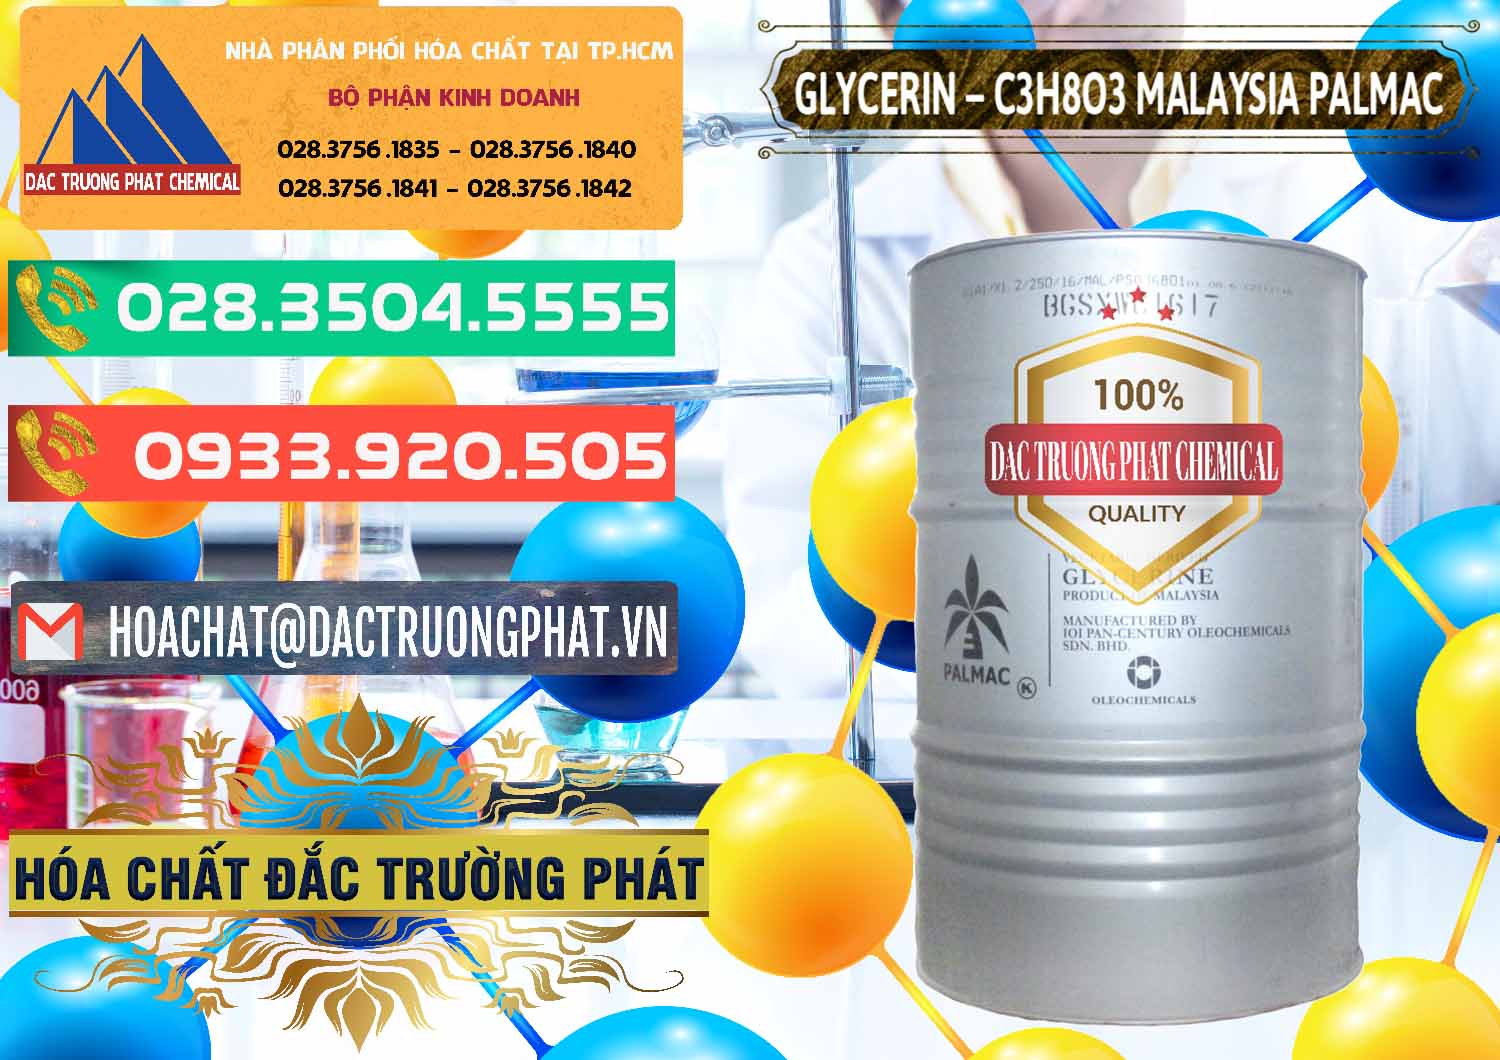 Cty chuyên cung ứng & bán Glycerin – C3H8O3 99.7% Malaysia Palmac - 0067 - Bán _ phân phối hóa chất tại TP.HCM - congtyhoachat.com.vn